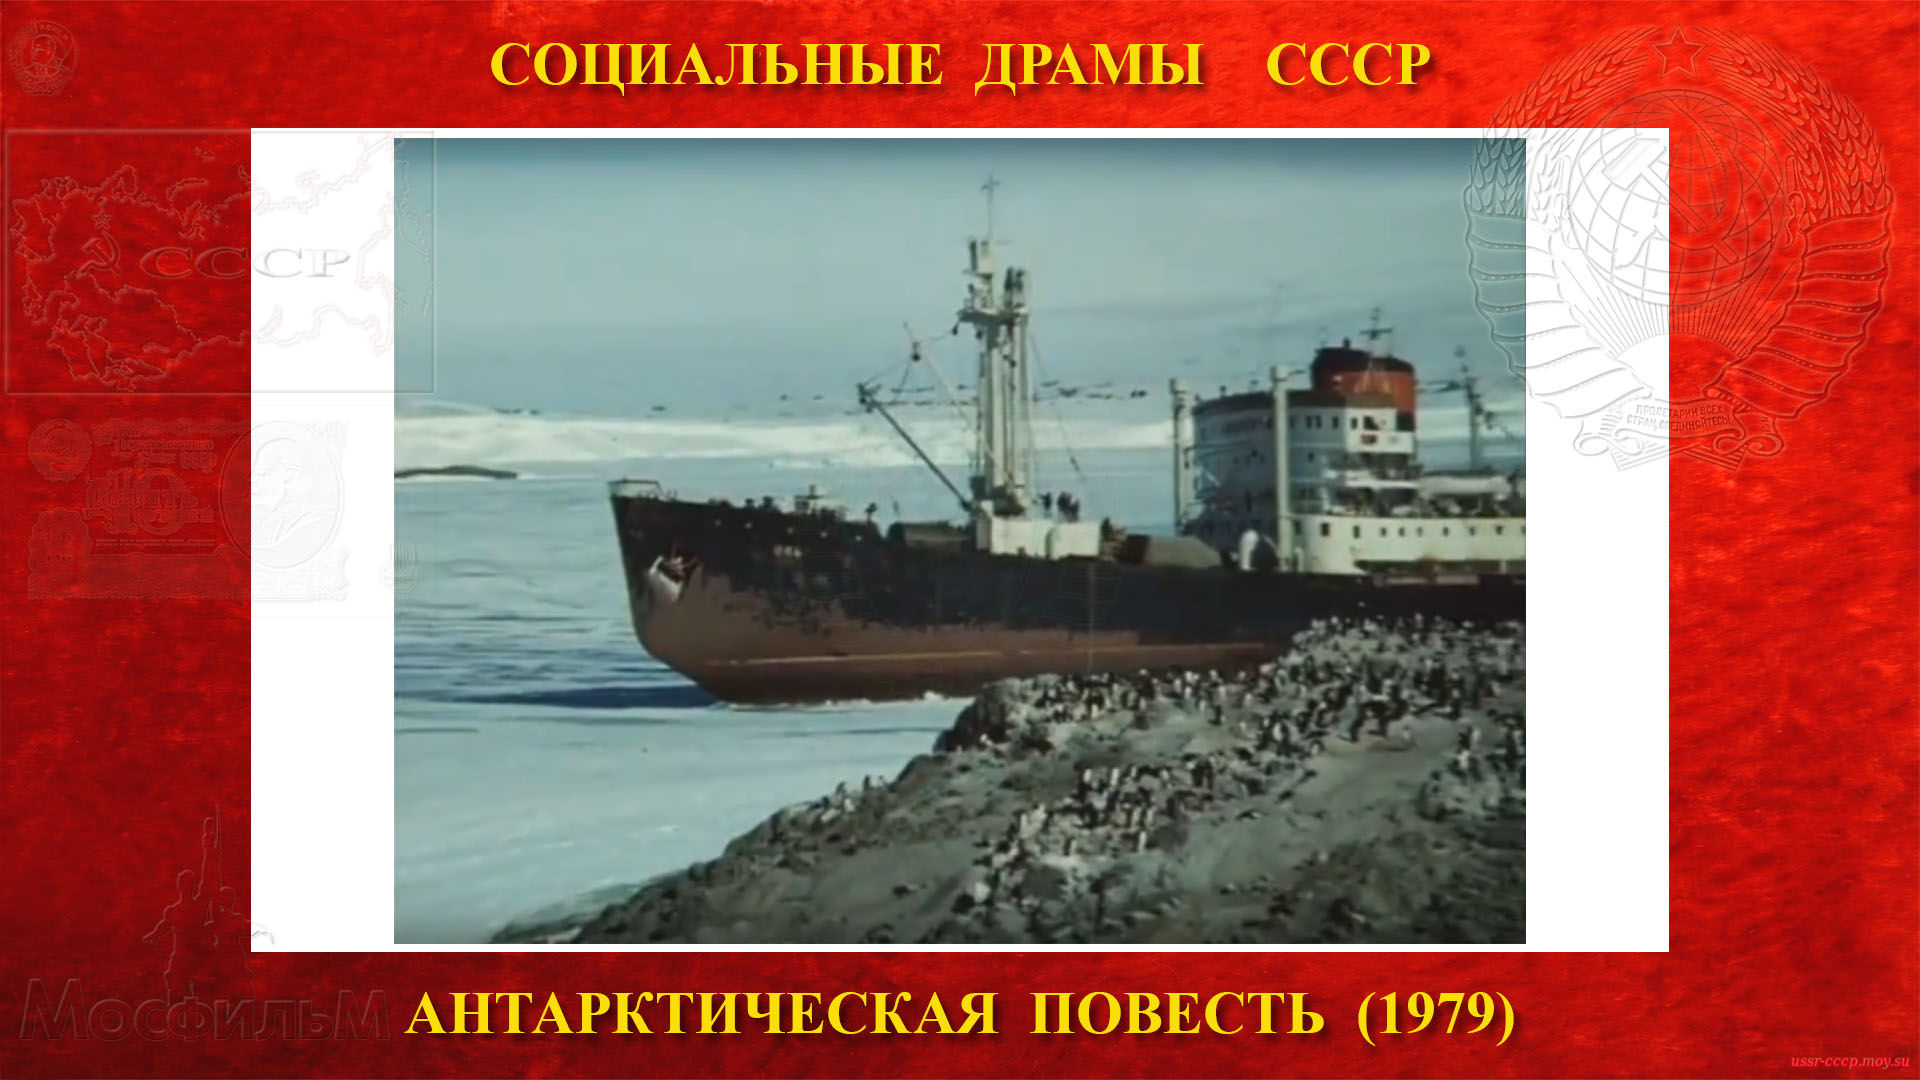 Антарктическая повесть — Советский дизель-электроход «Обь»